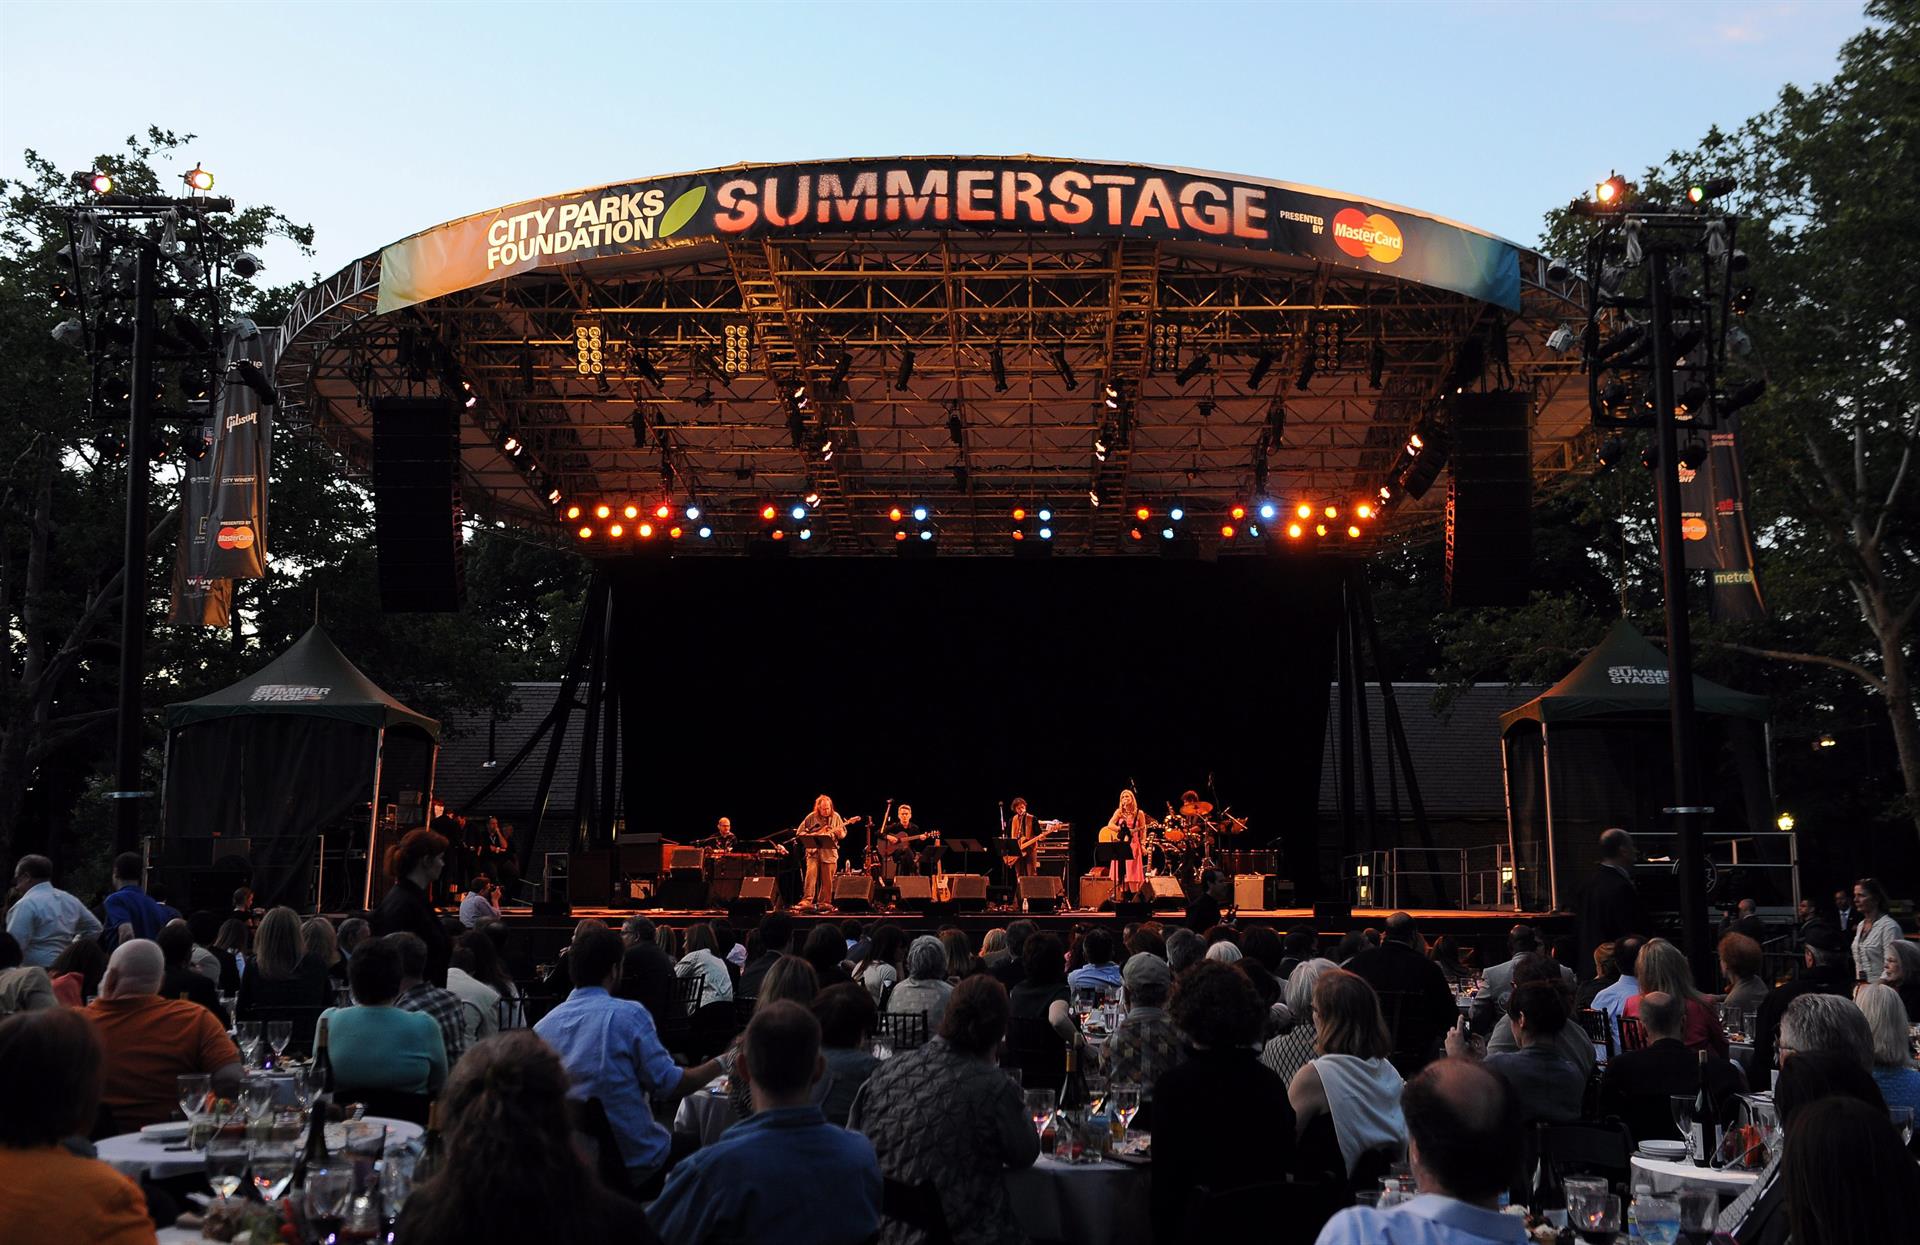 Vista del escenario del Summerstage en el Central Park de Nueva York (EEUU), imagen de archivo. EFE/ANDREW GOMBERT
